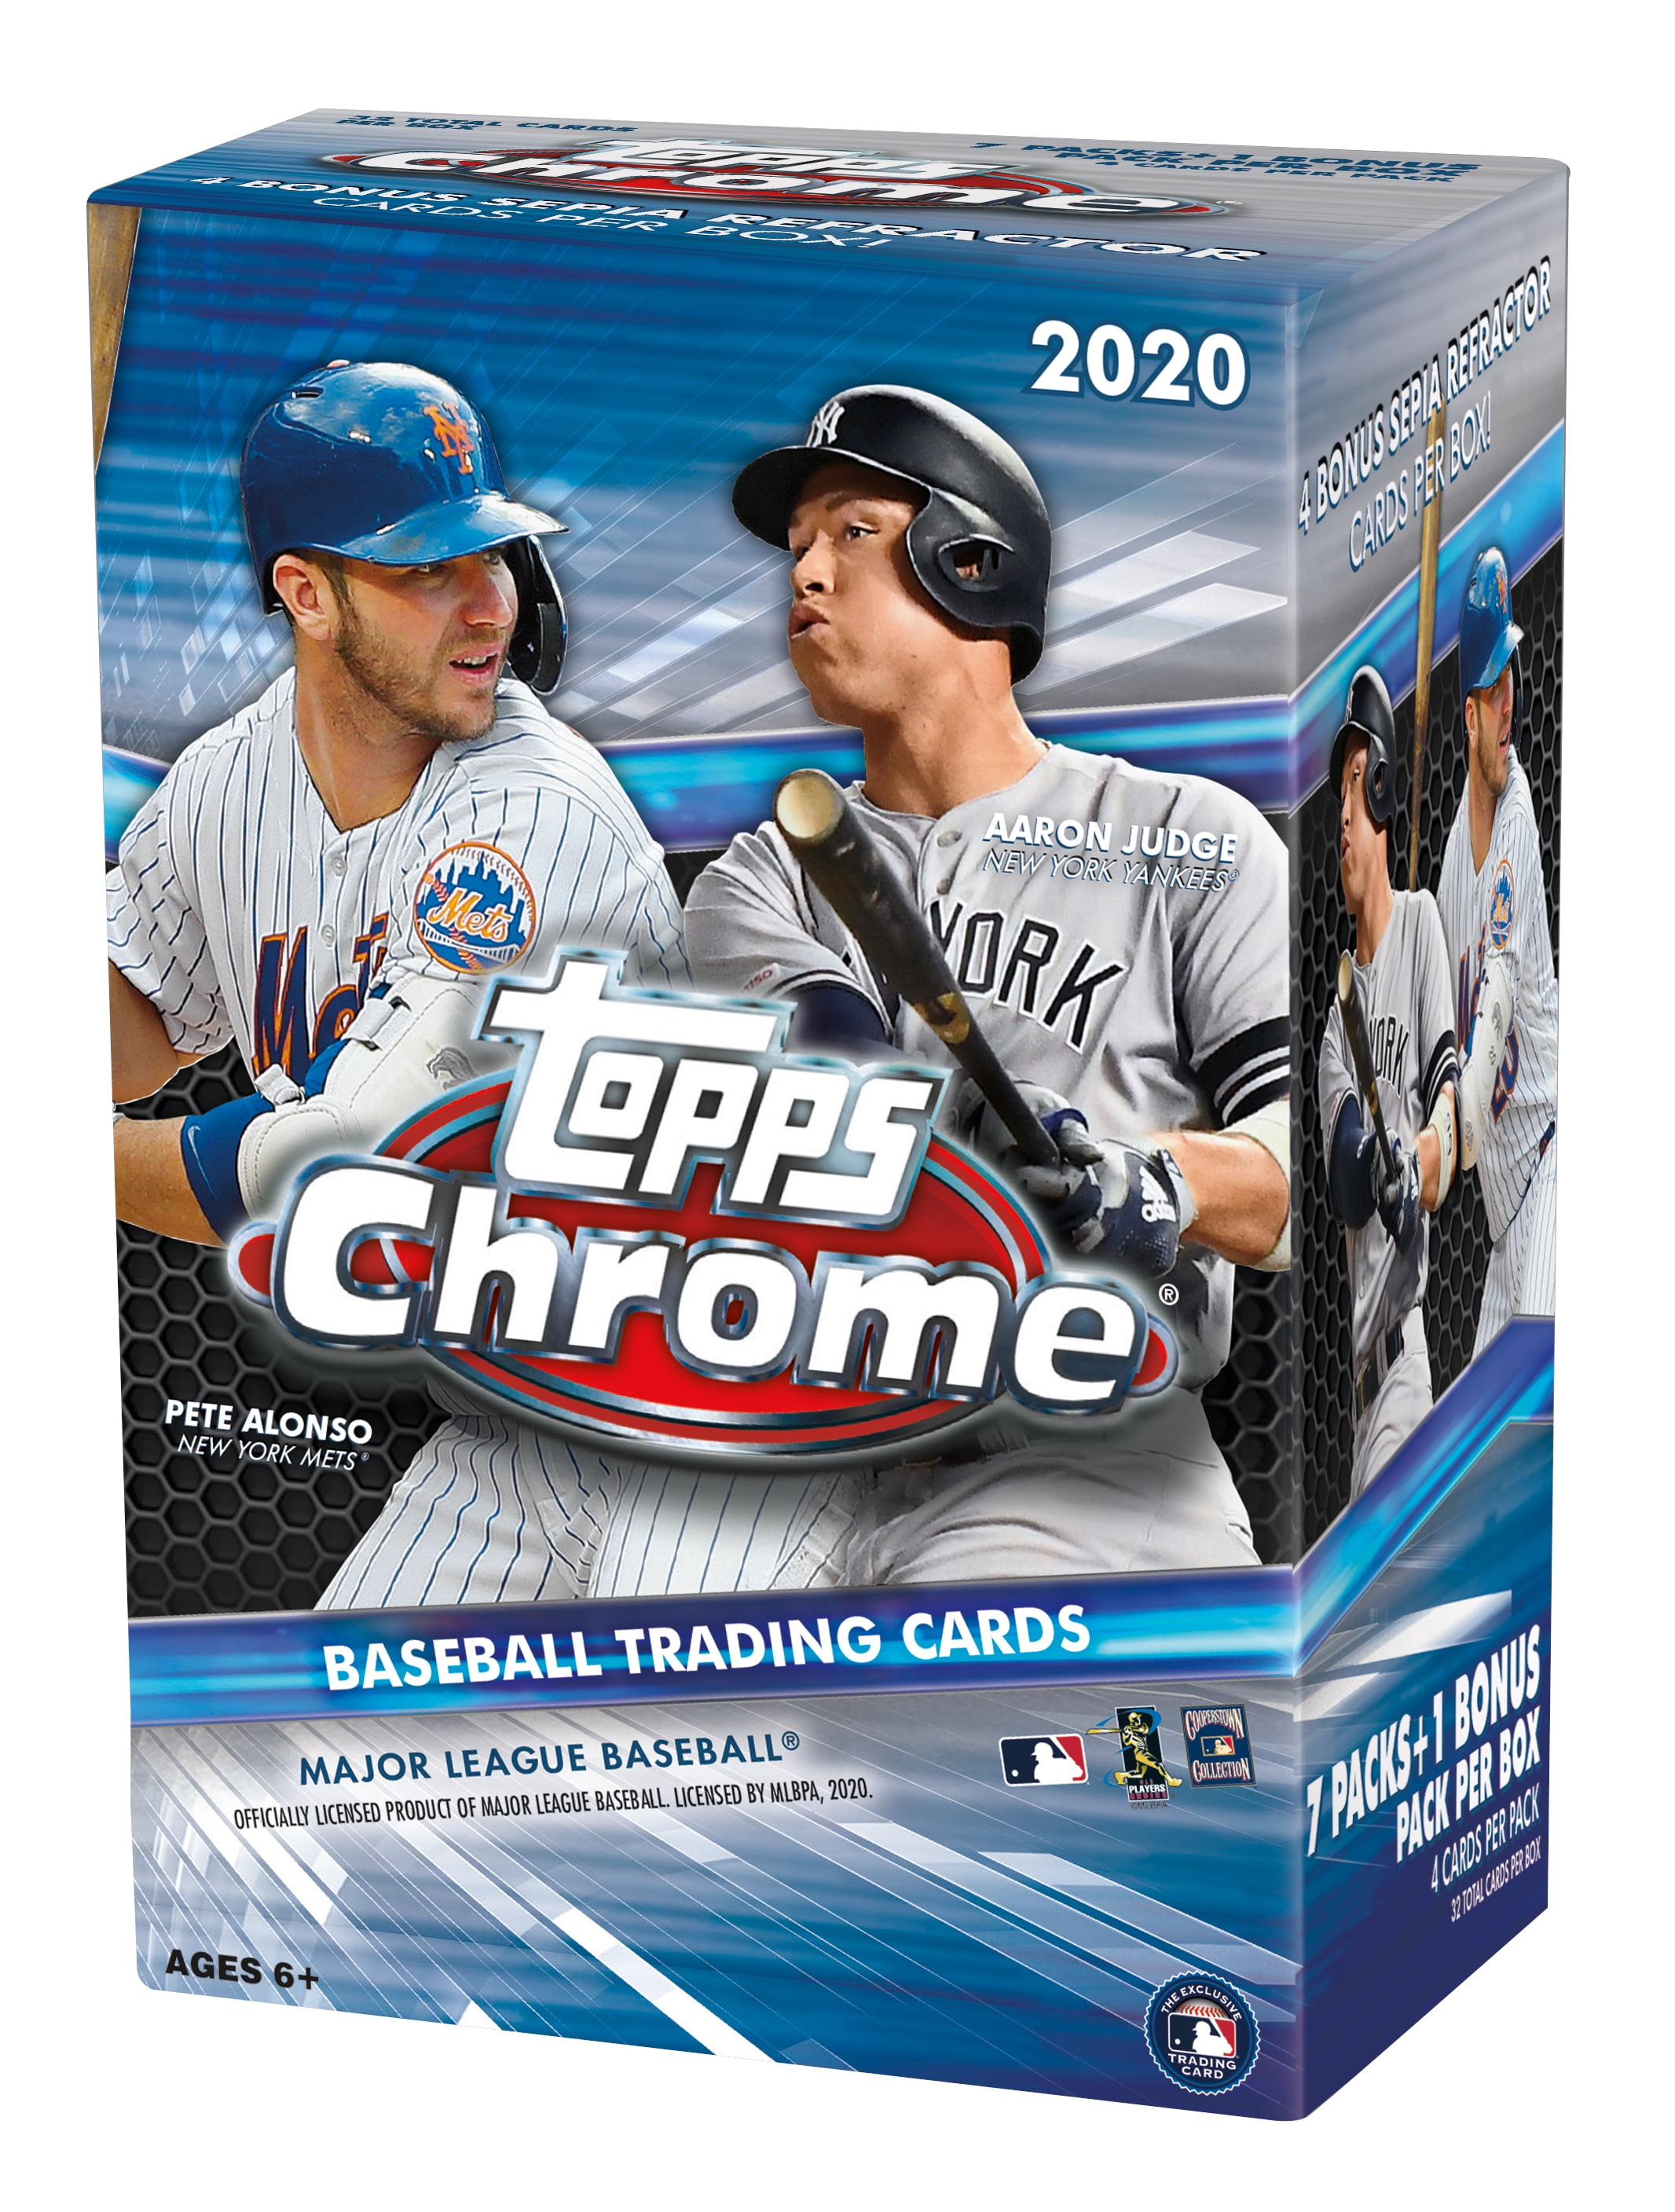 LOT 4 Value Pack Cello Bowman 2020 Baseball Packs 2 Blaster Box 6 